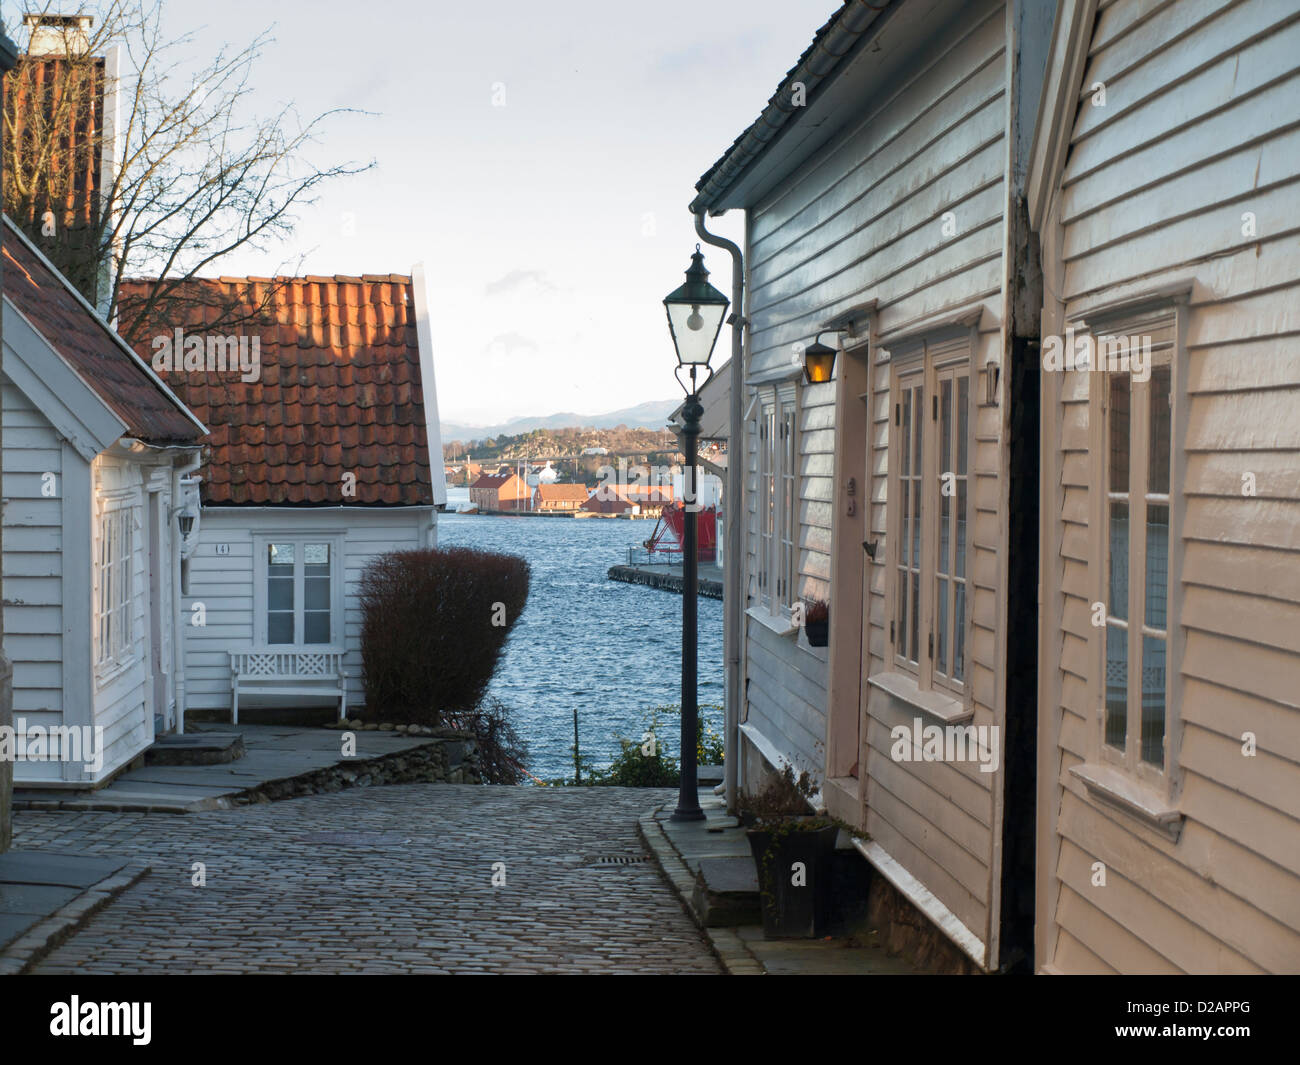 Empinadas calles empedradas y casas de madera en el casco antiguo de Stavanger, Noruega una atracción turística y zona recidential. Harbour y fjord puede verse a continuación Foto de stock